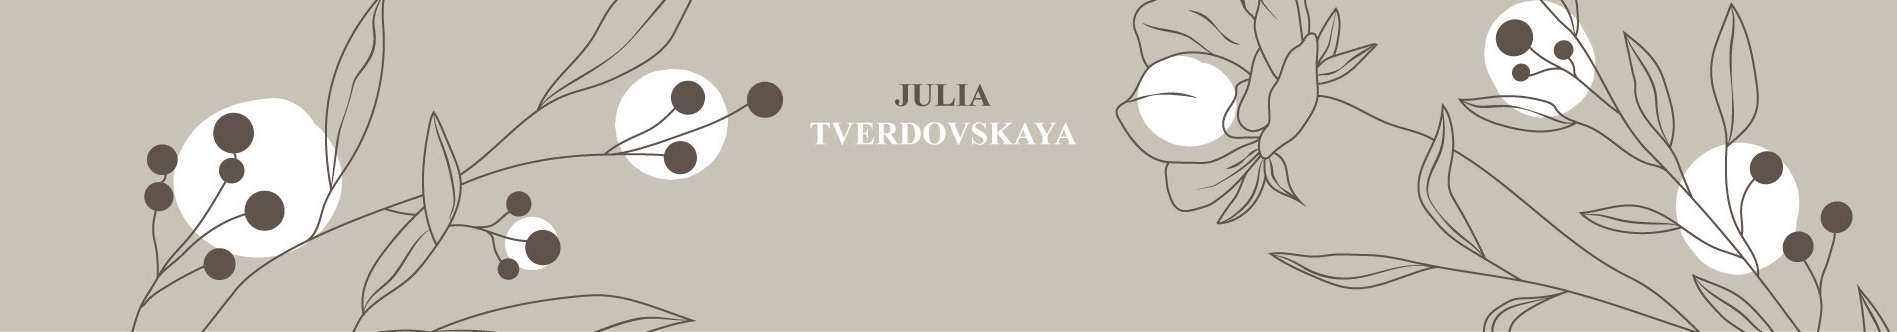 Julia Tverdovskaya's profile banner